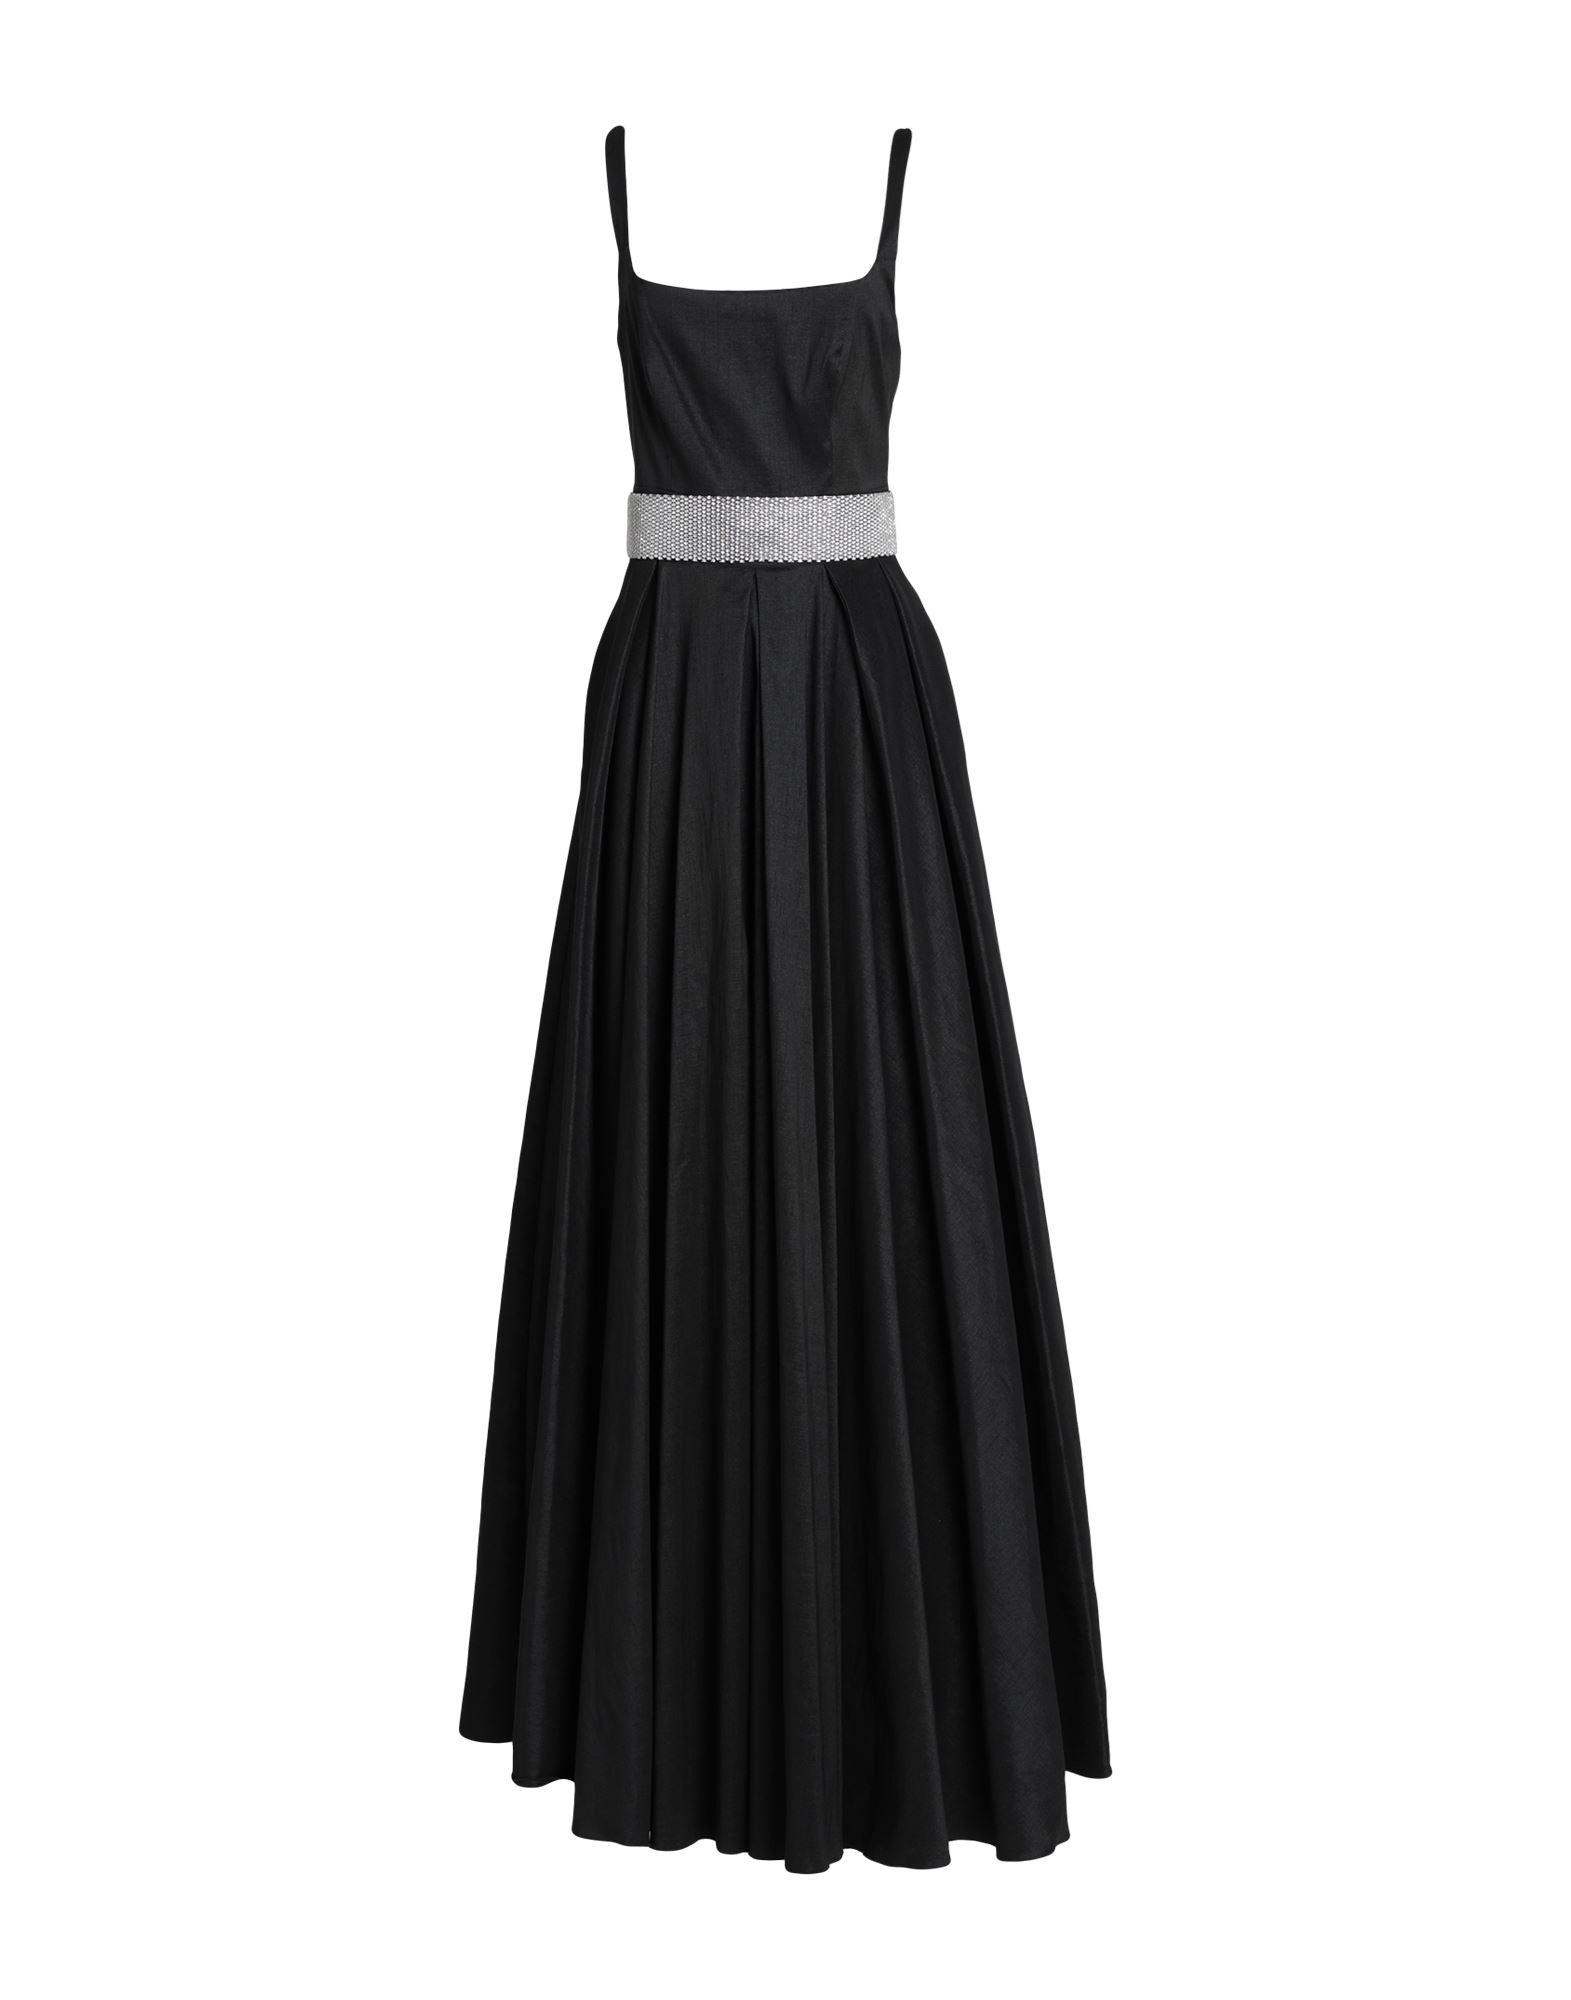 ATELIER LEGORA Synthetic Long Dress in Black | Lyst